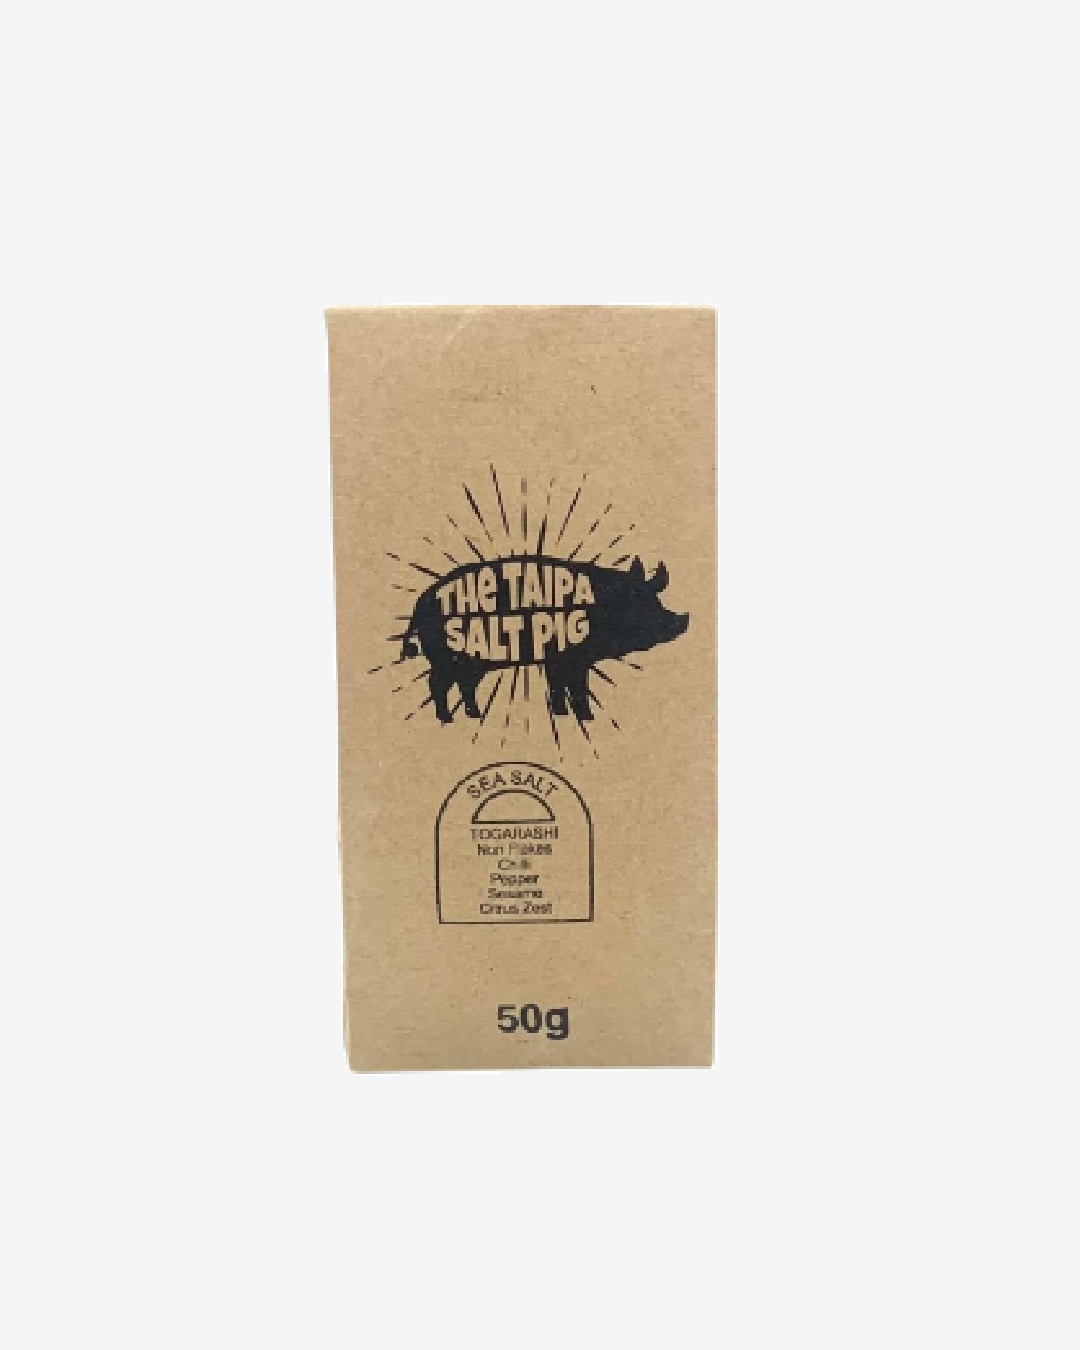 The Taipa Salt Pig Togarashi sea salt bag